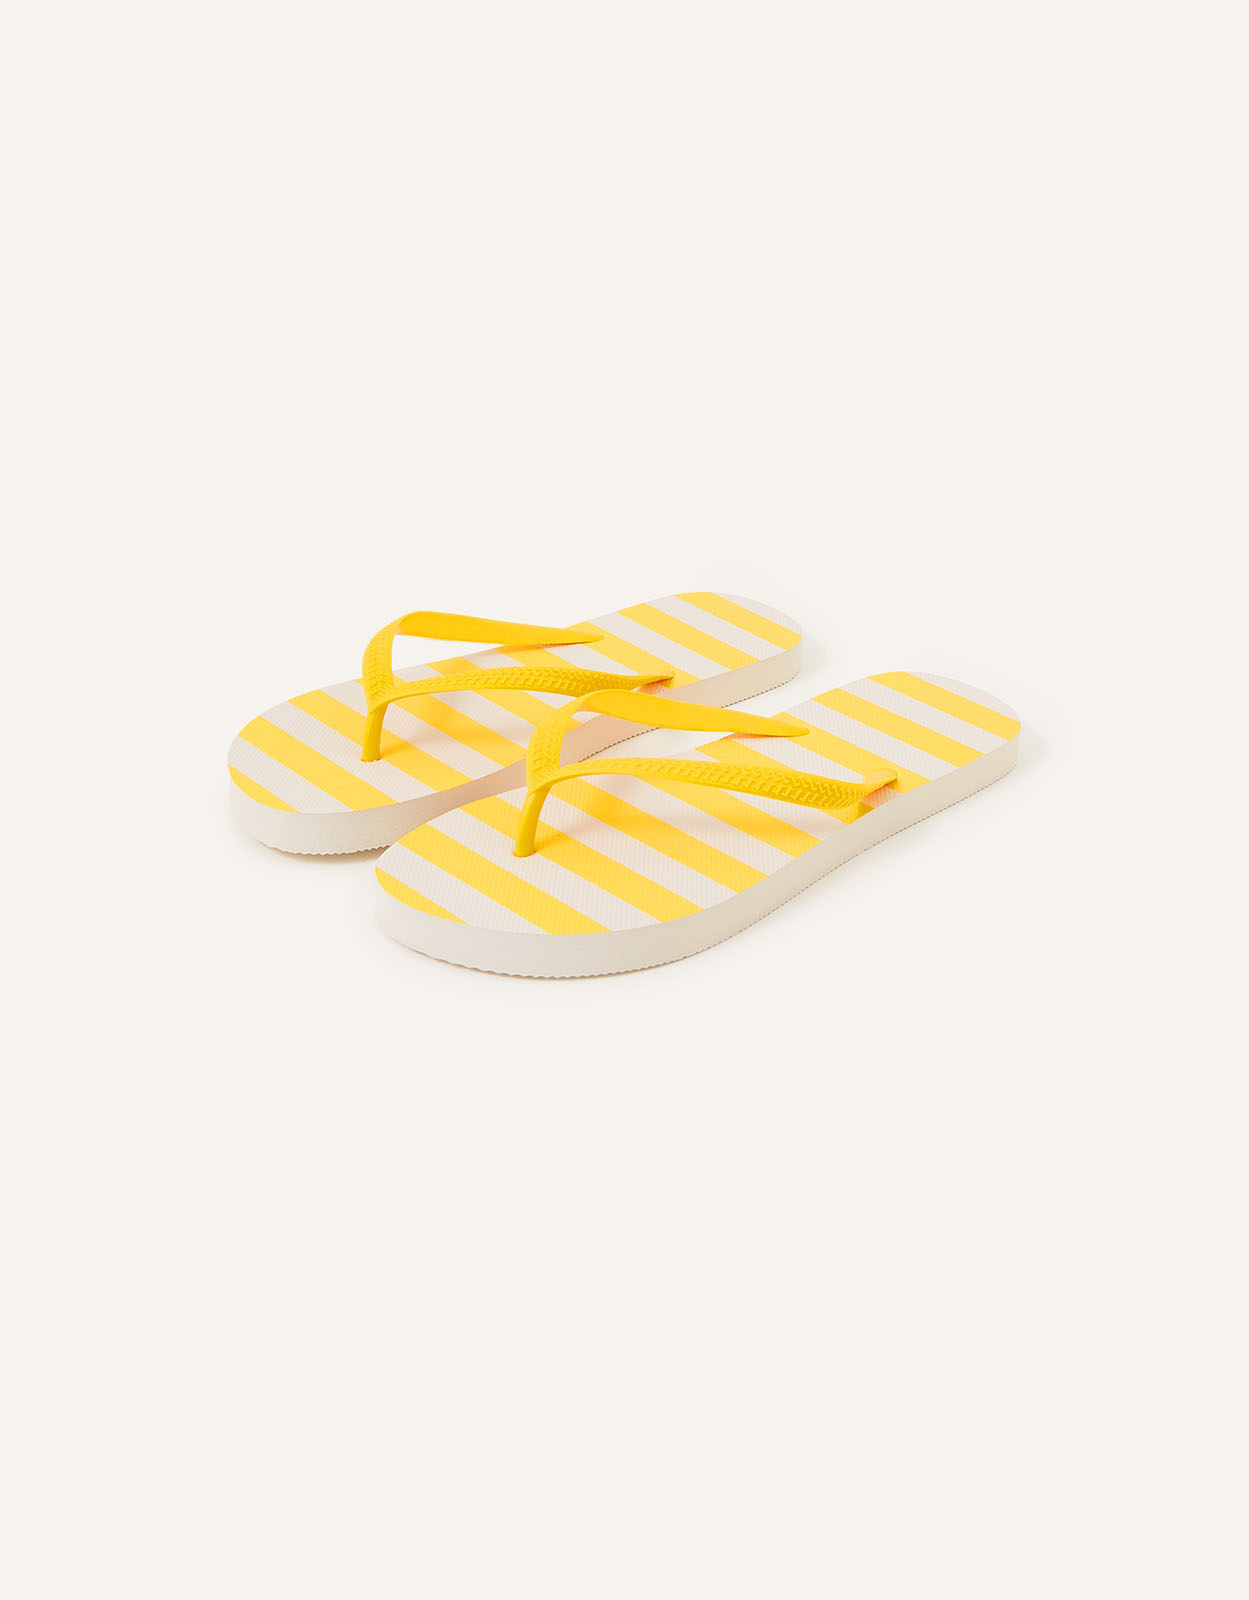 Accessorize Women's Stripe Flip Flops Yellow, Size: S